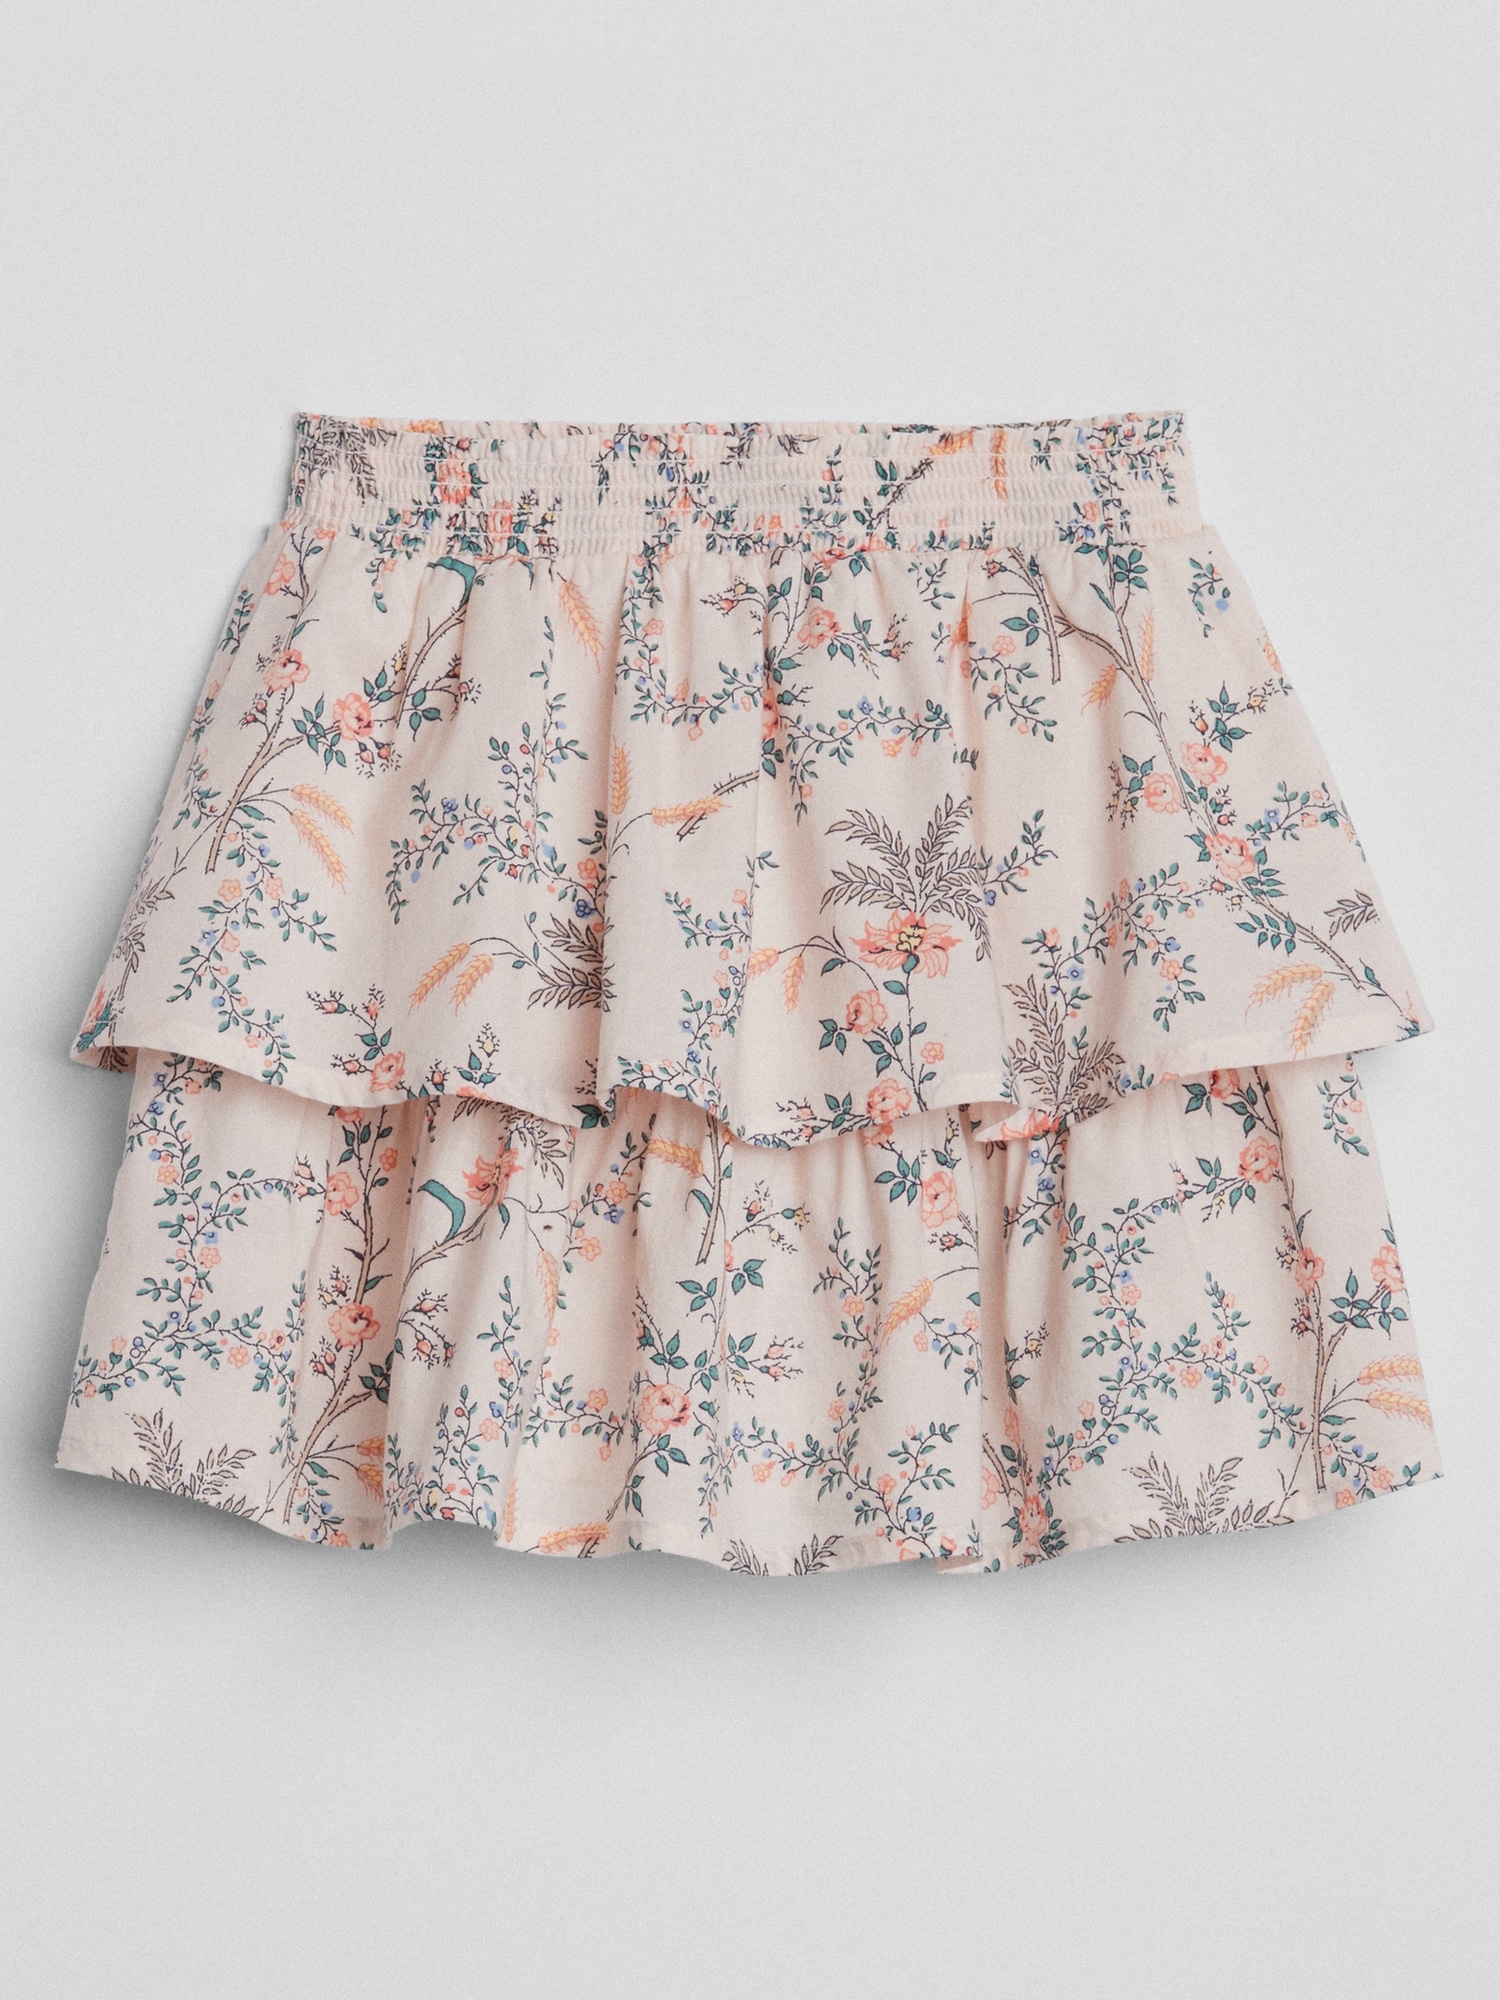 Layered Ruffle Skirt | Gap